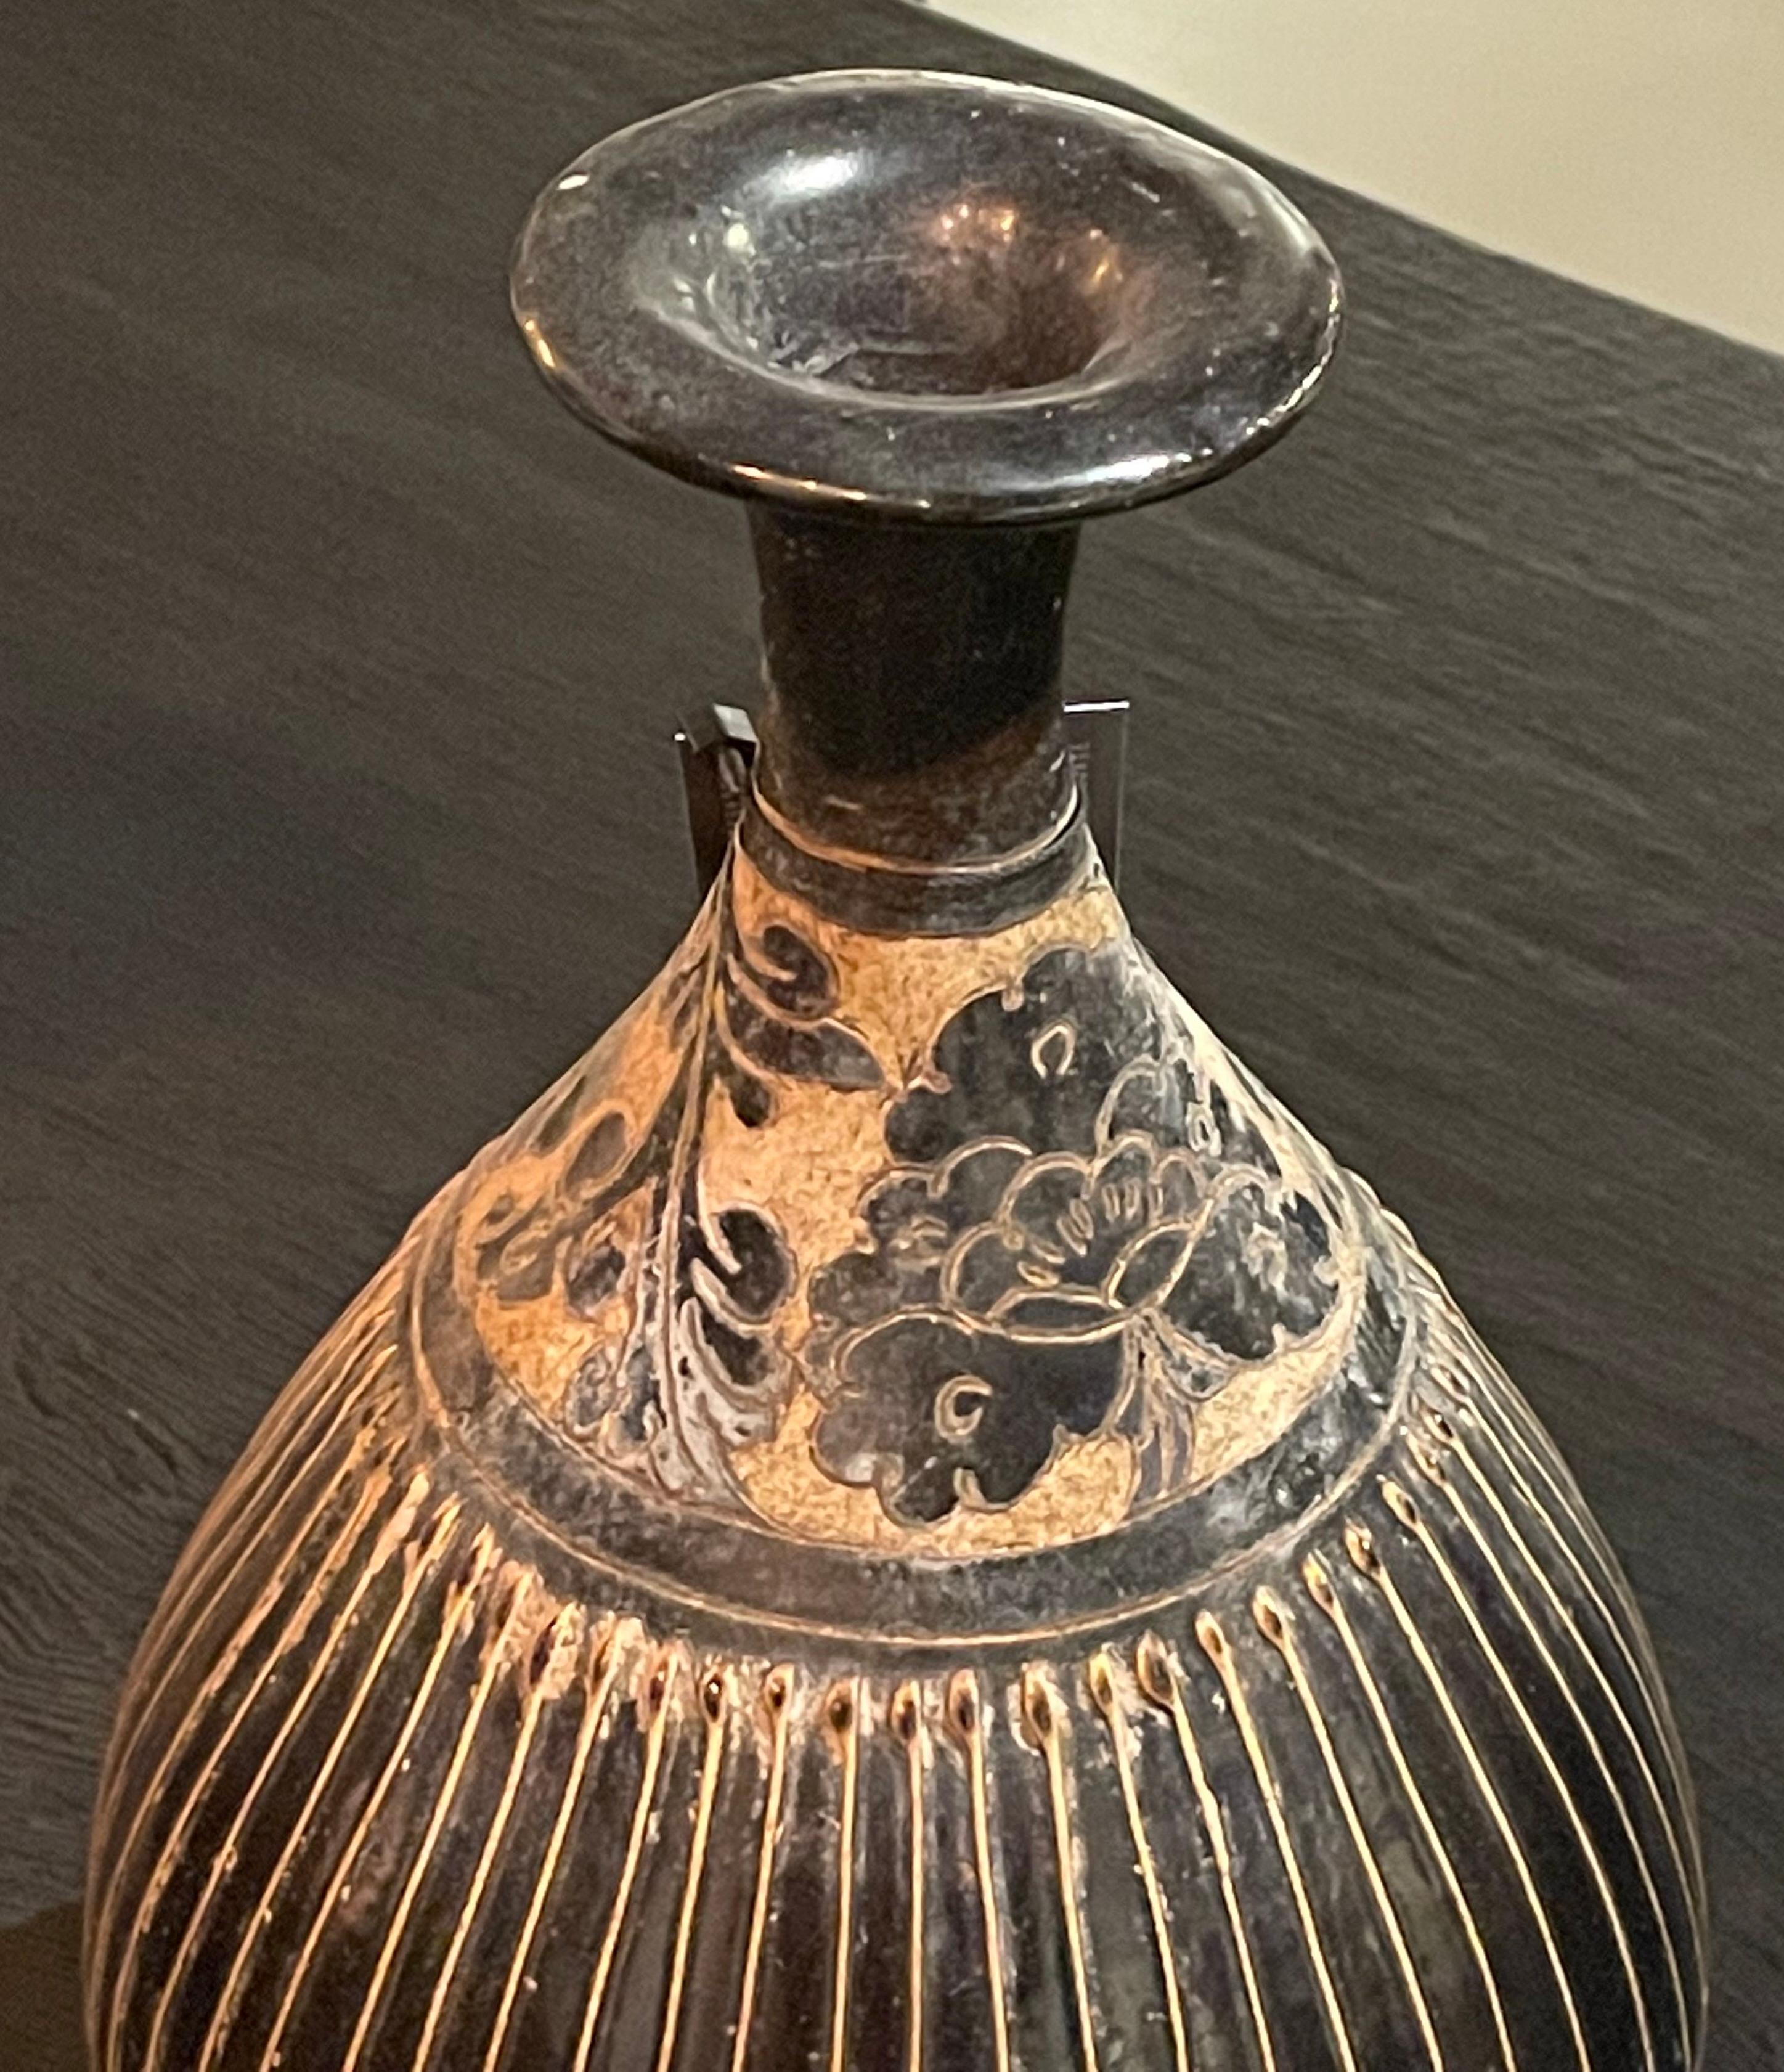 Vase chinois contemporain à rayures noires et or avec 
motif décoratif sur le dessus du vase en forme de tulipe.
Deux disponibles et vendus individuellement.
Arrivée à déterminer.